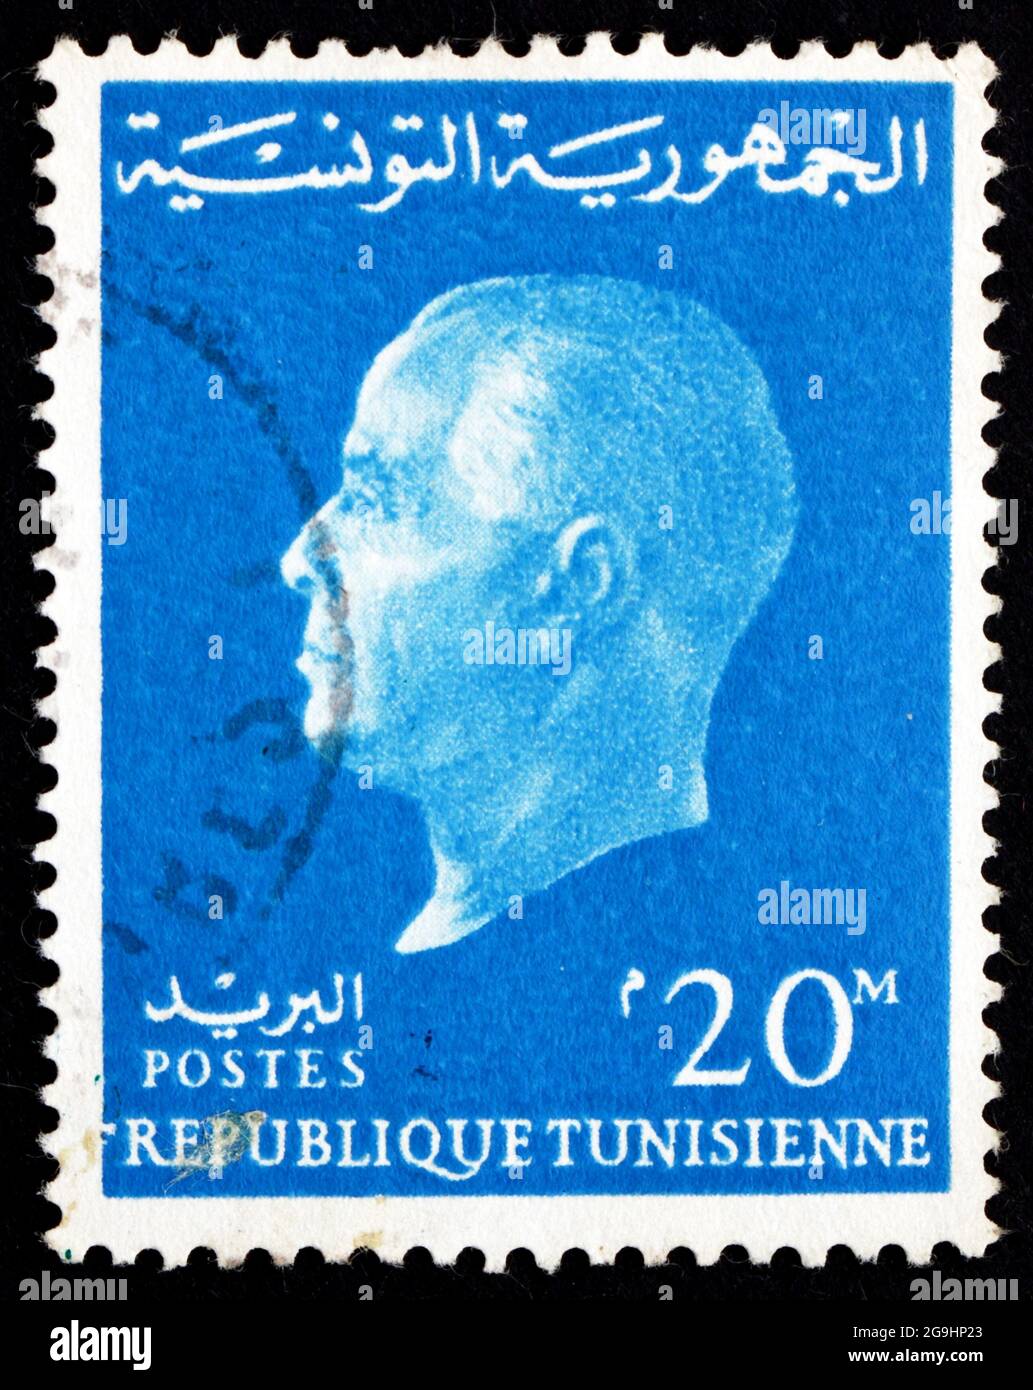 TÚNEZ - ALREDEDOR de 1962: Un sello impreso en Túnez muestra a Habib Bourguiba, 1st Presidente de la República de Túnez, alrededor de 1962 Foto de stock